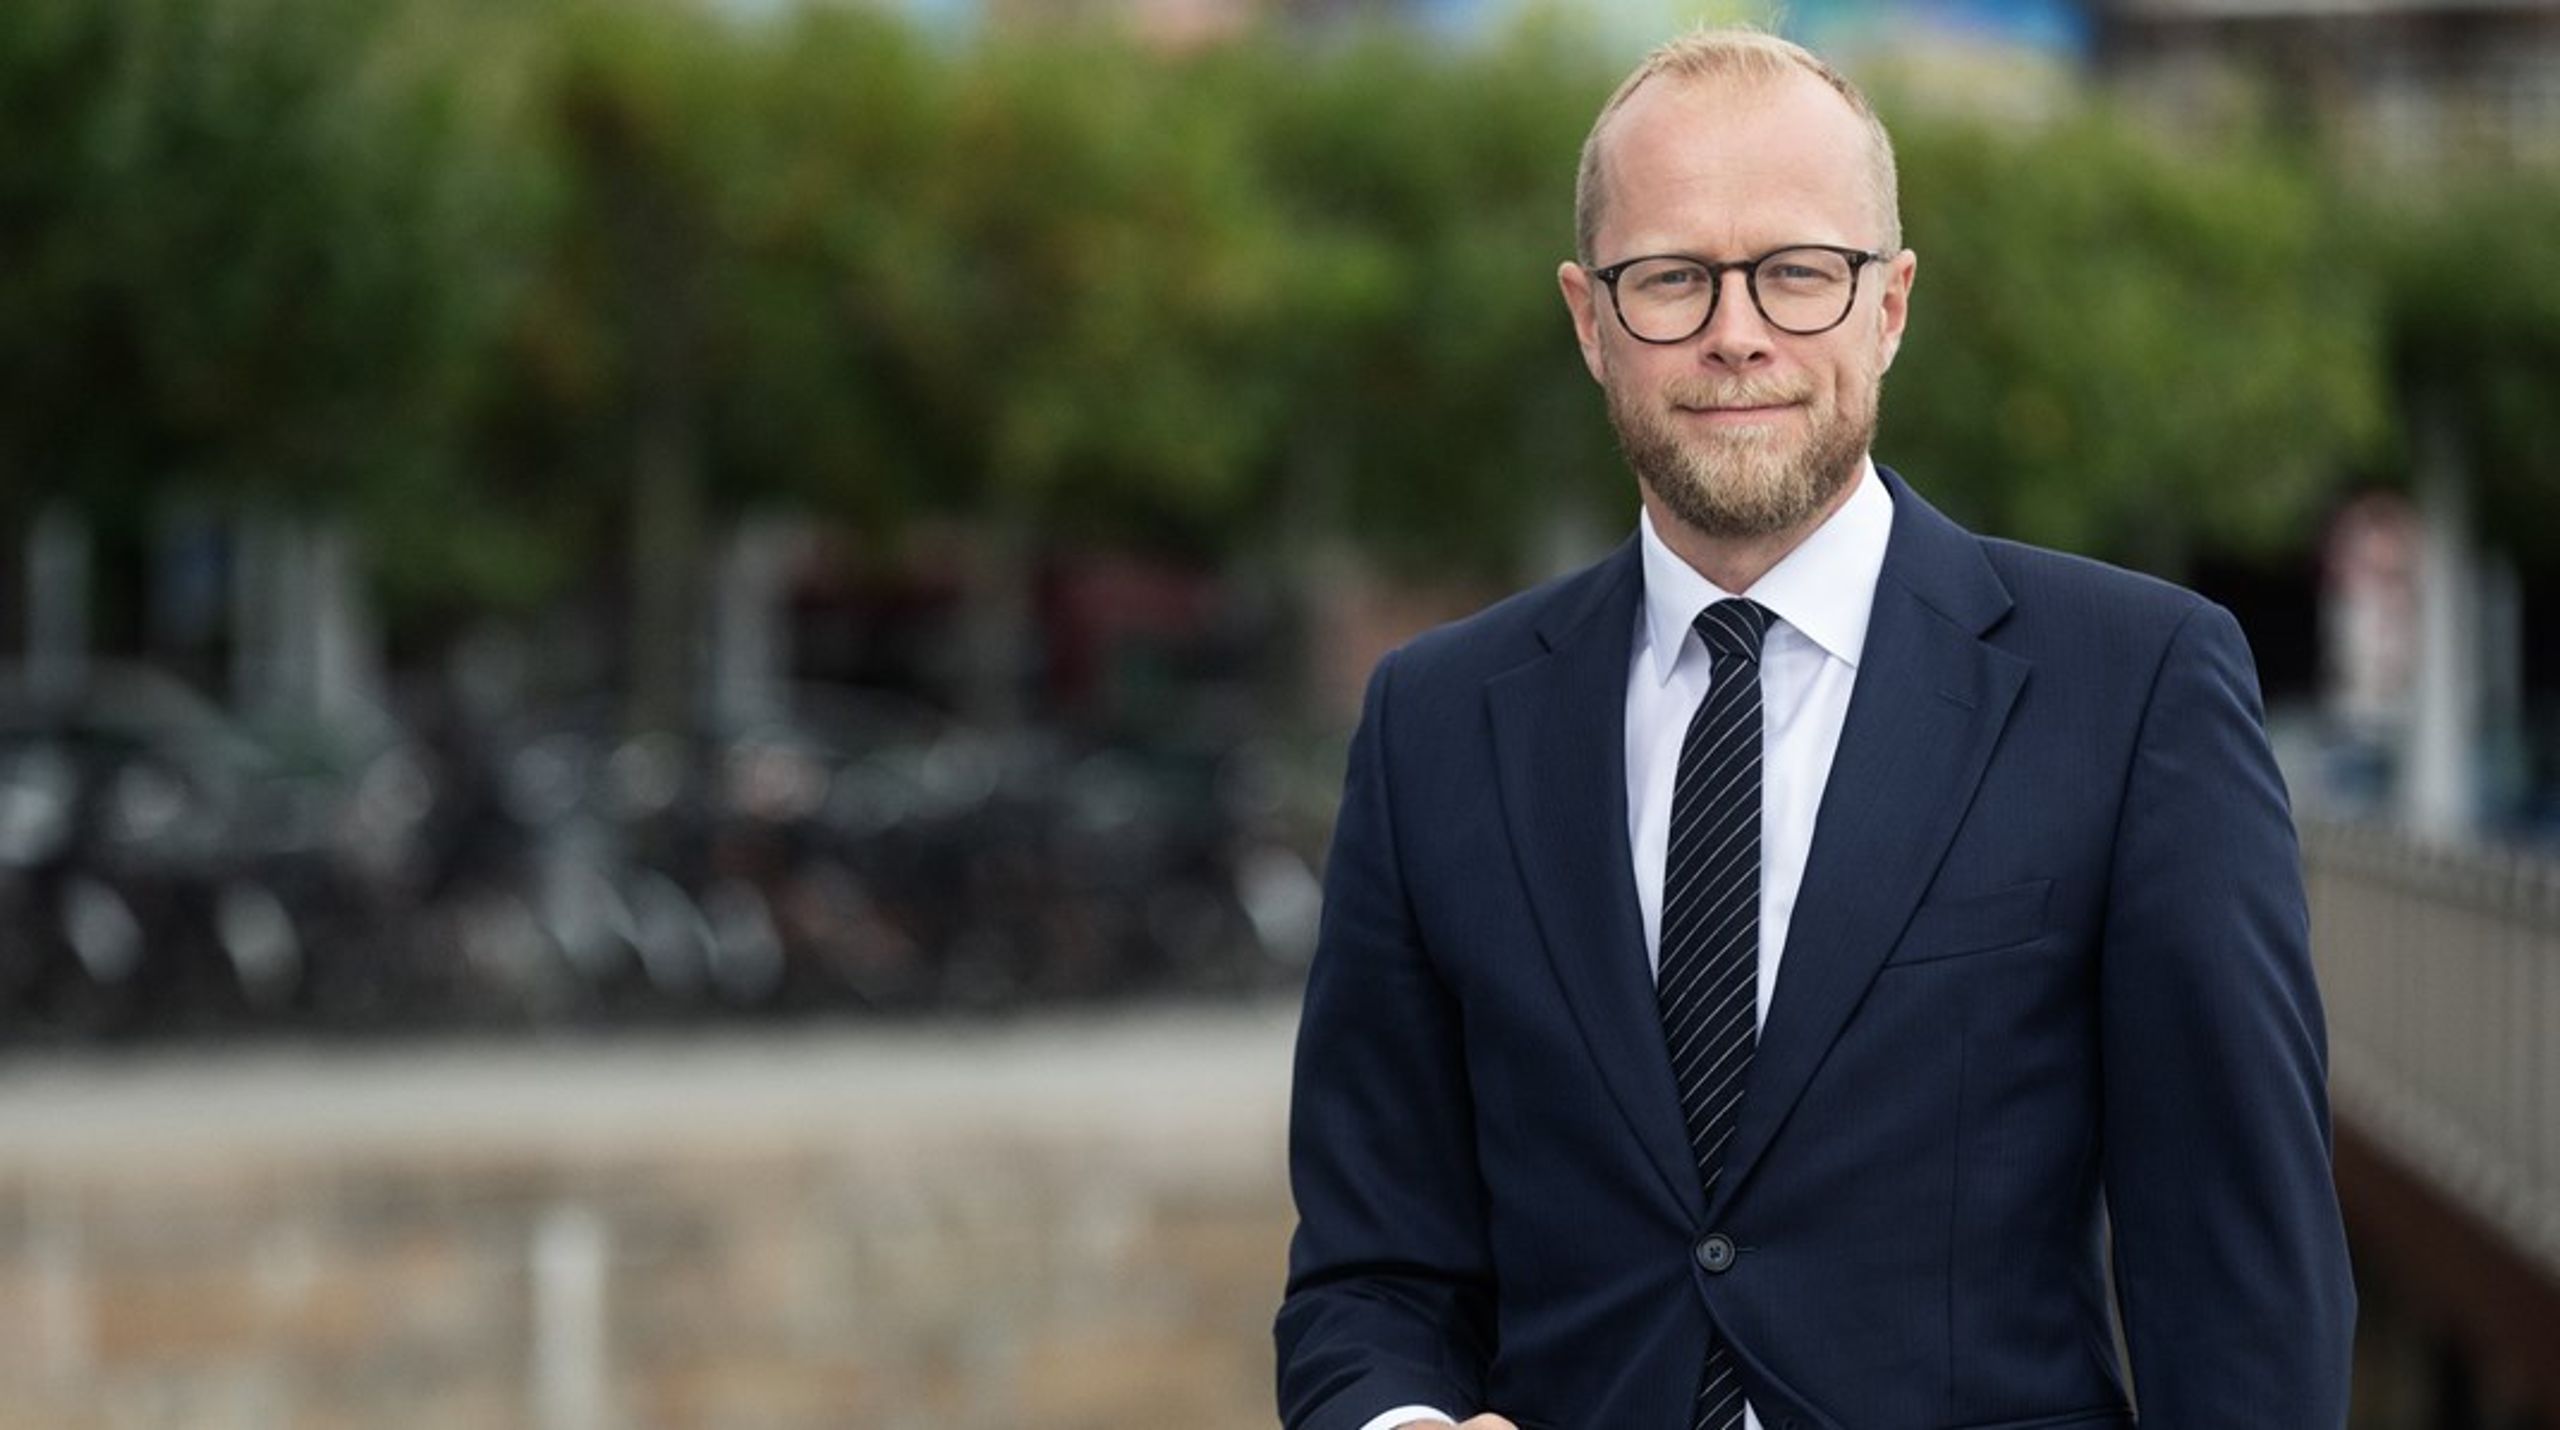 Det kræver en ambitiøs strategi, hvis vi skal sikre, at
dansk erhvervsliv kommer styrket ud af coronakrisen, skriver Tore Stramer.